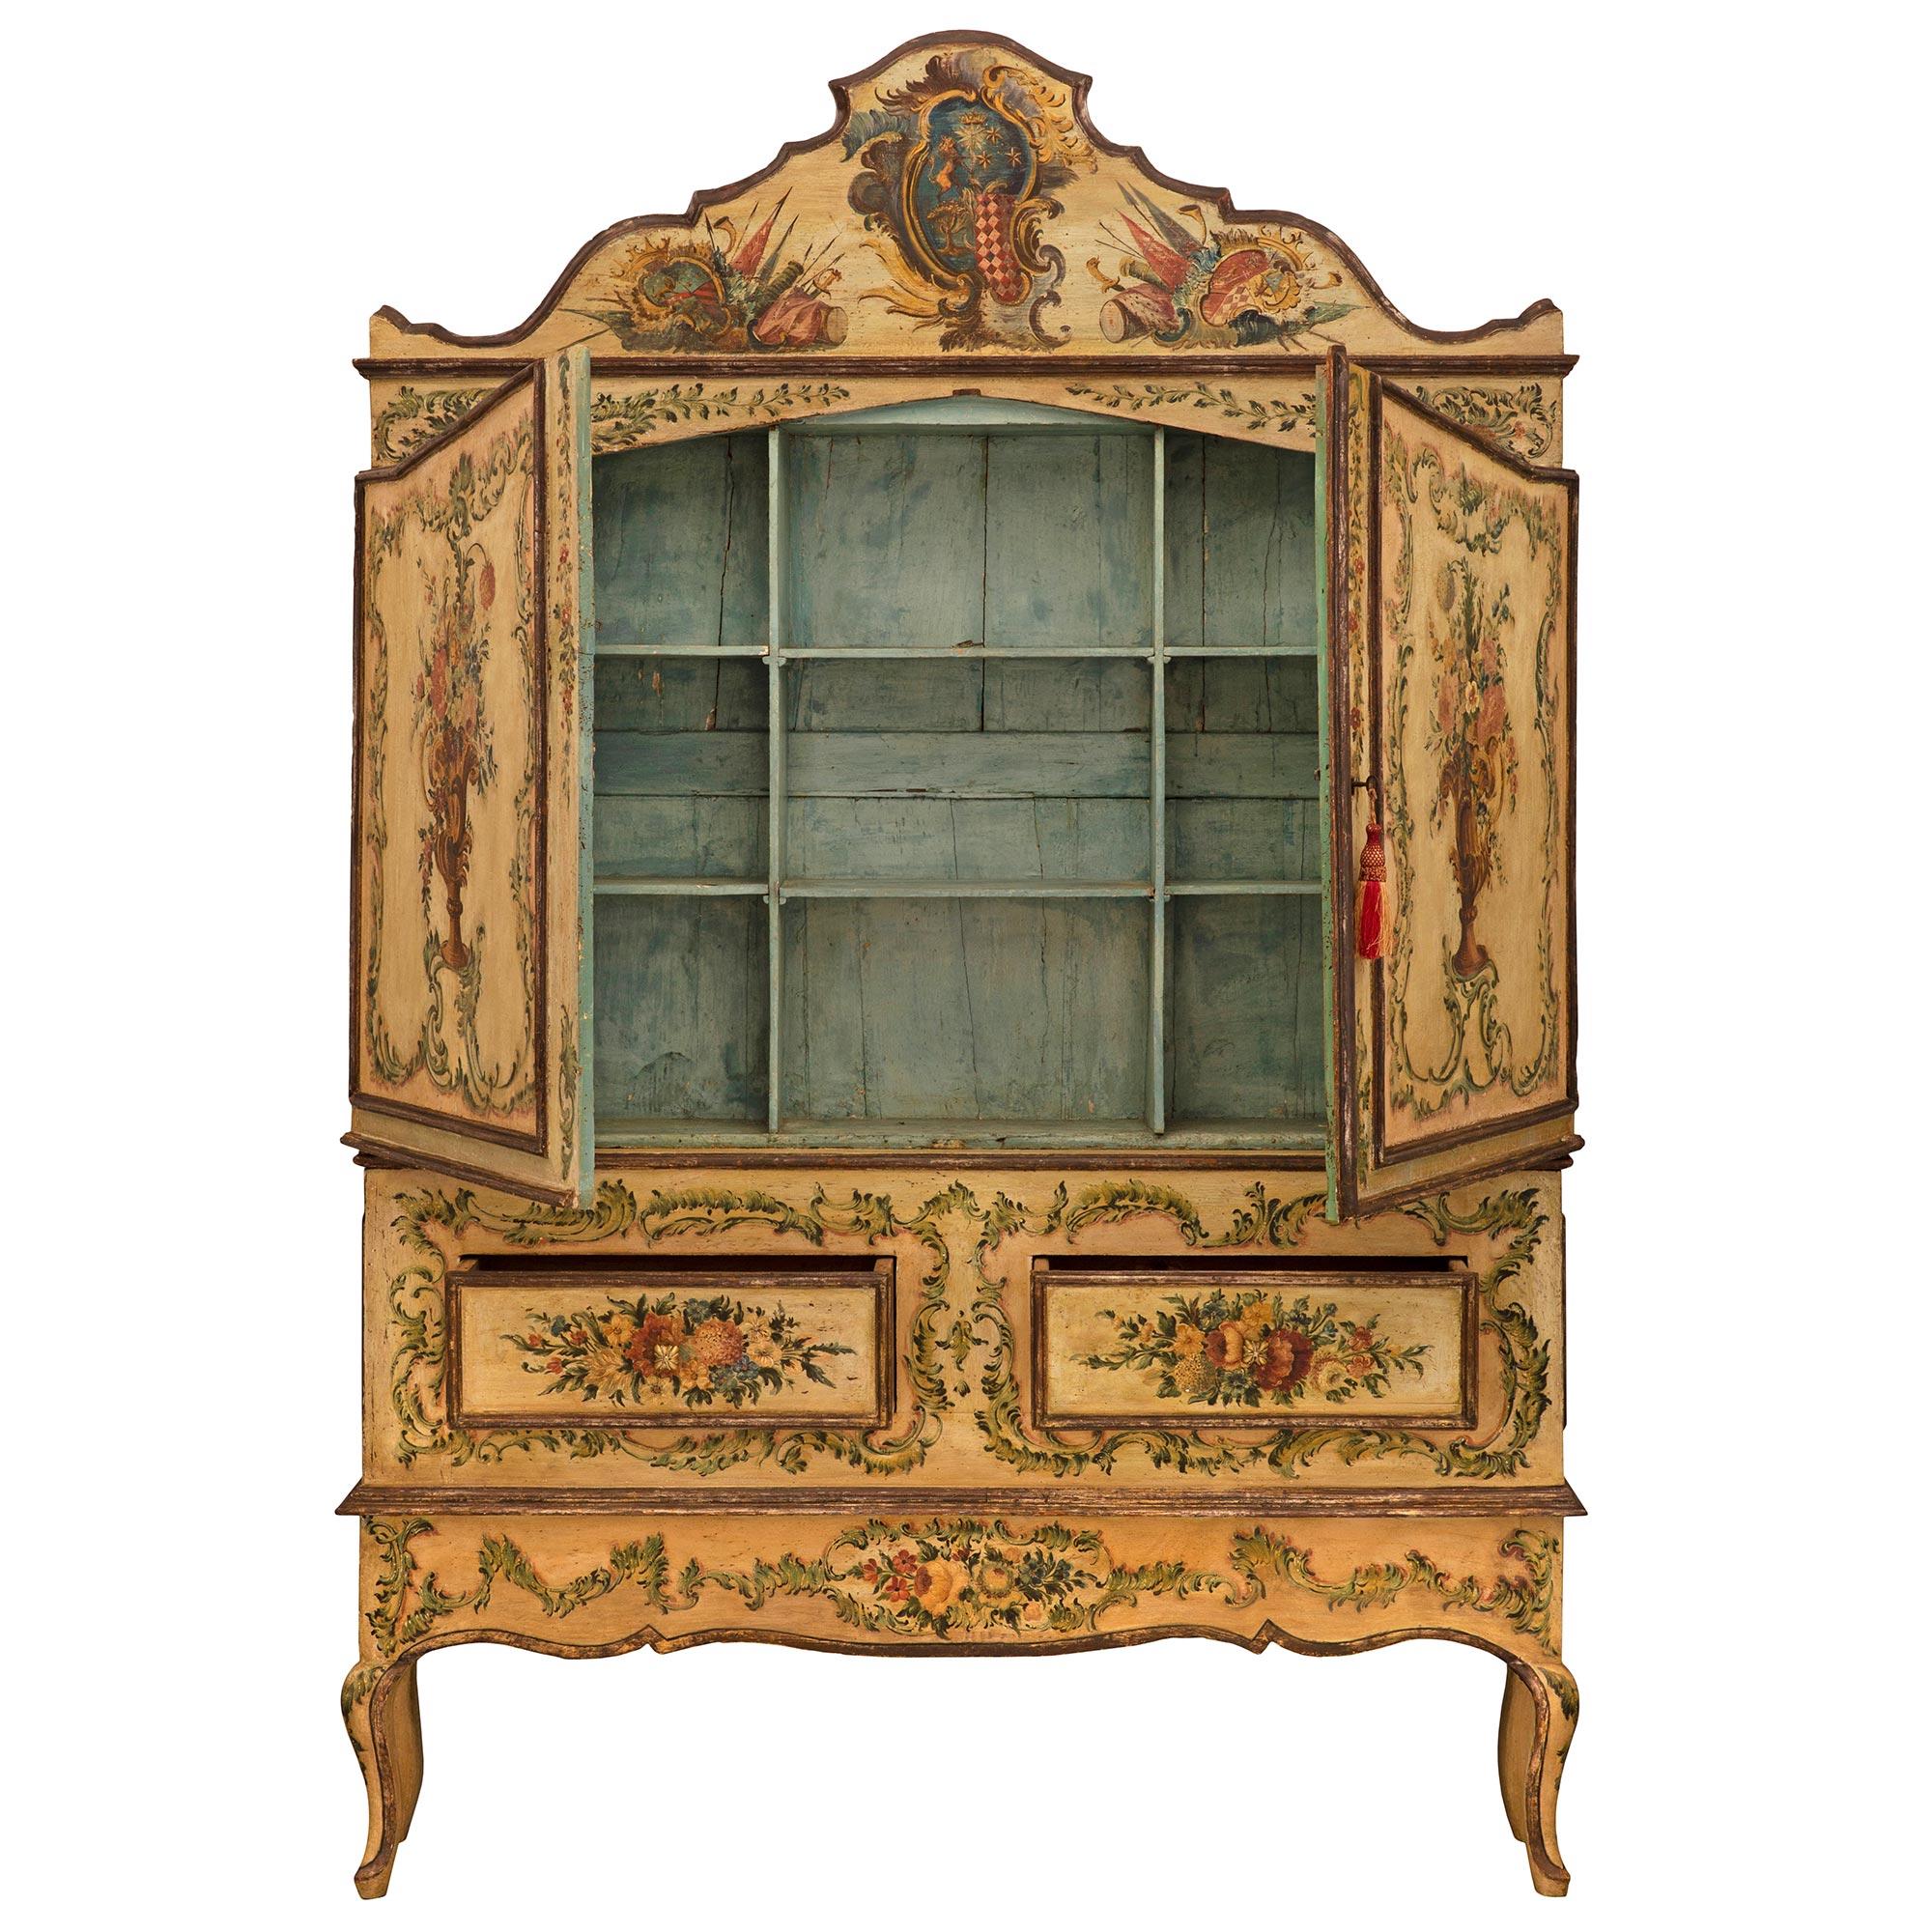 Un superbe et extrêmement décoratif cabinet vénitien du XVIIIe siècle, peint à la main. Ce meuble unique à deux portes et deux tiroirs repose sur d'élégants pieds cabriole et présente des fleurs épanouies peintes à la main de façon exceptionnelle et